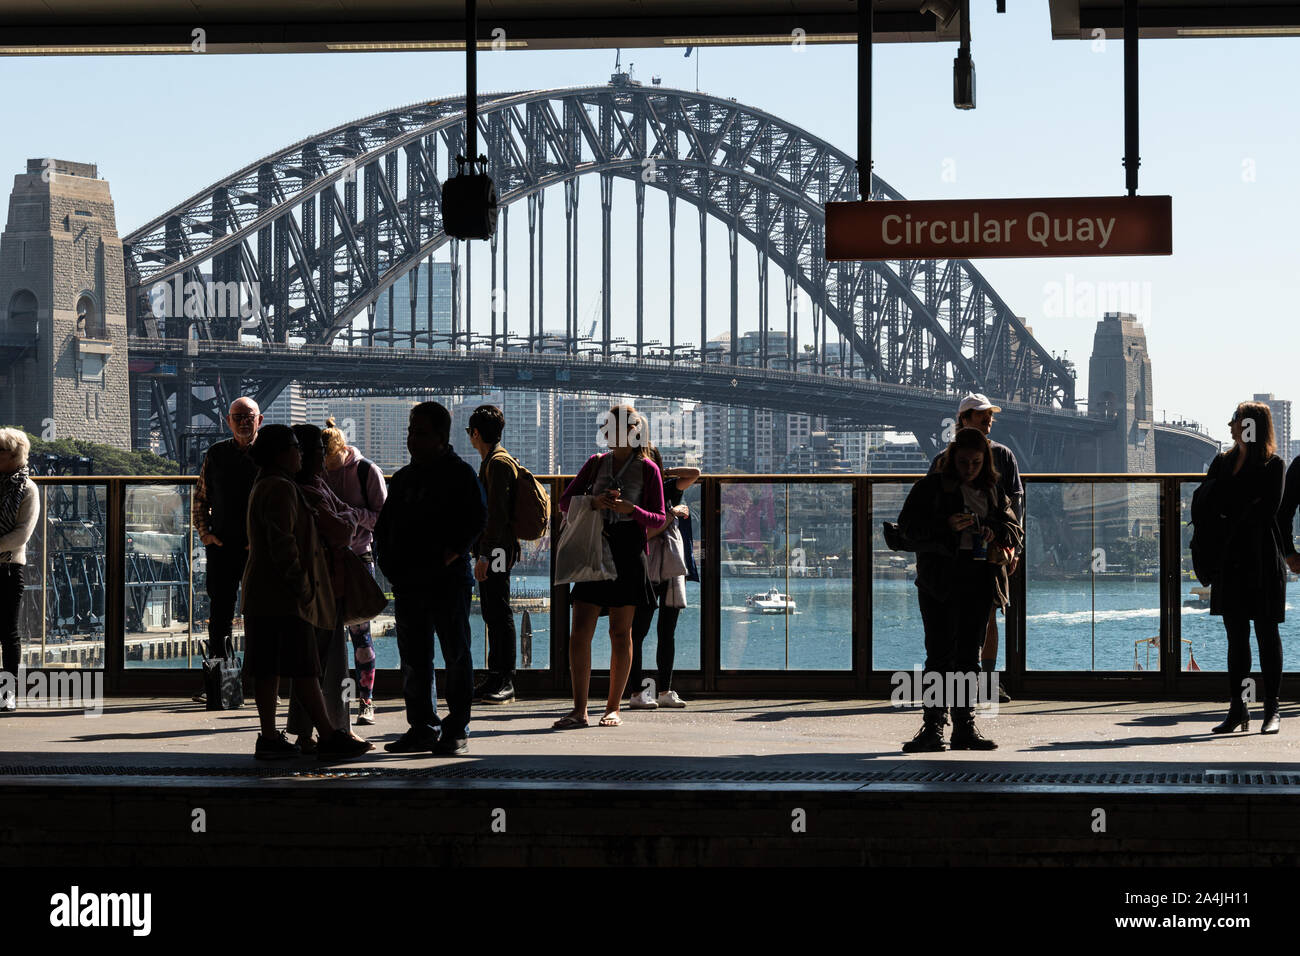 Sydney, Australie - 4 septembre 2019 : Commuter en attente de leur train à la station Circular Quay avec le célèbre pont de Sydney dans la zone Banque D'Images